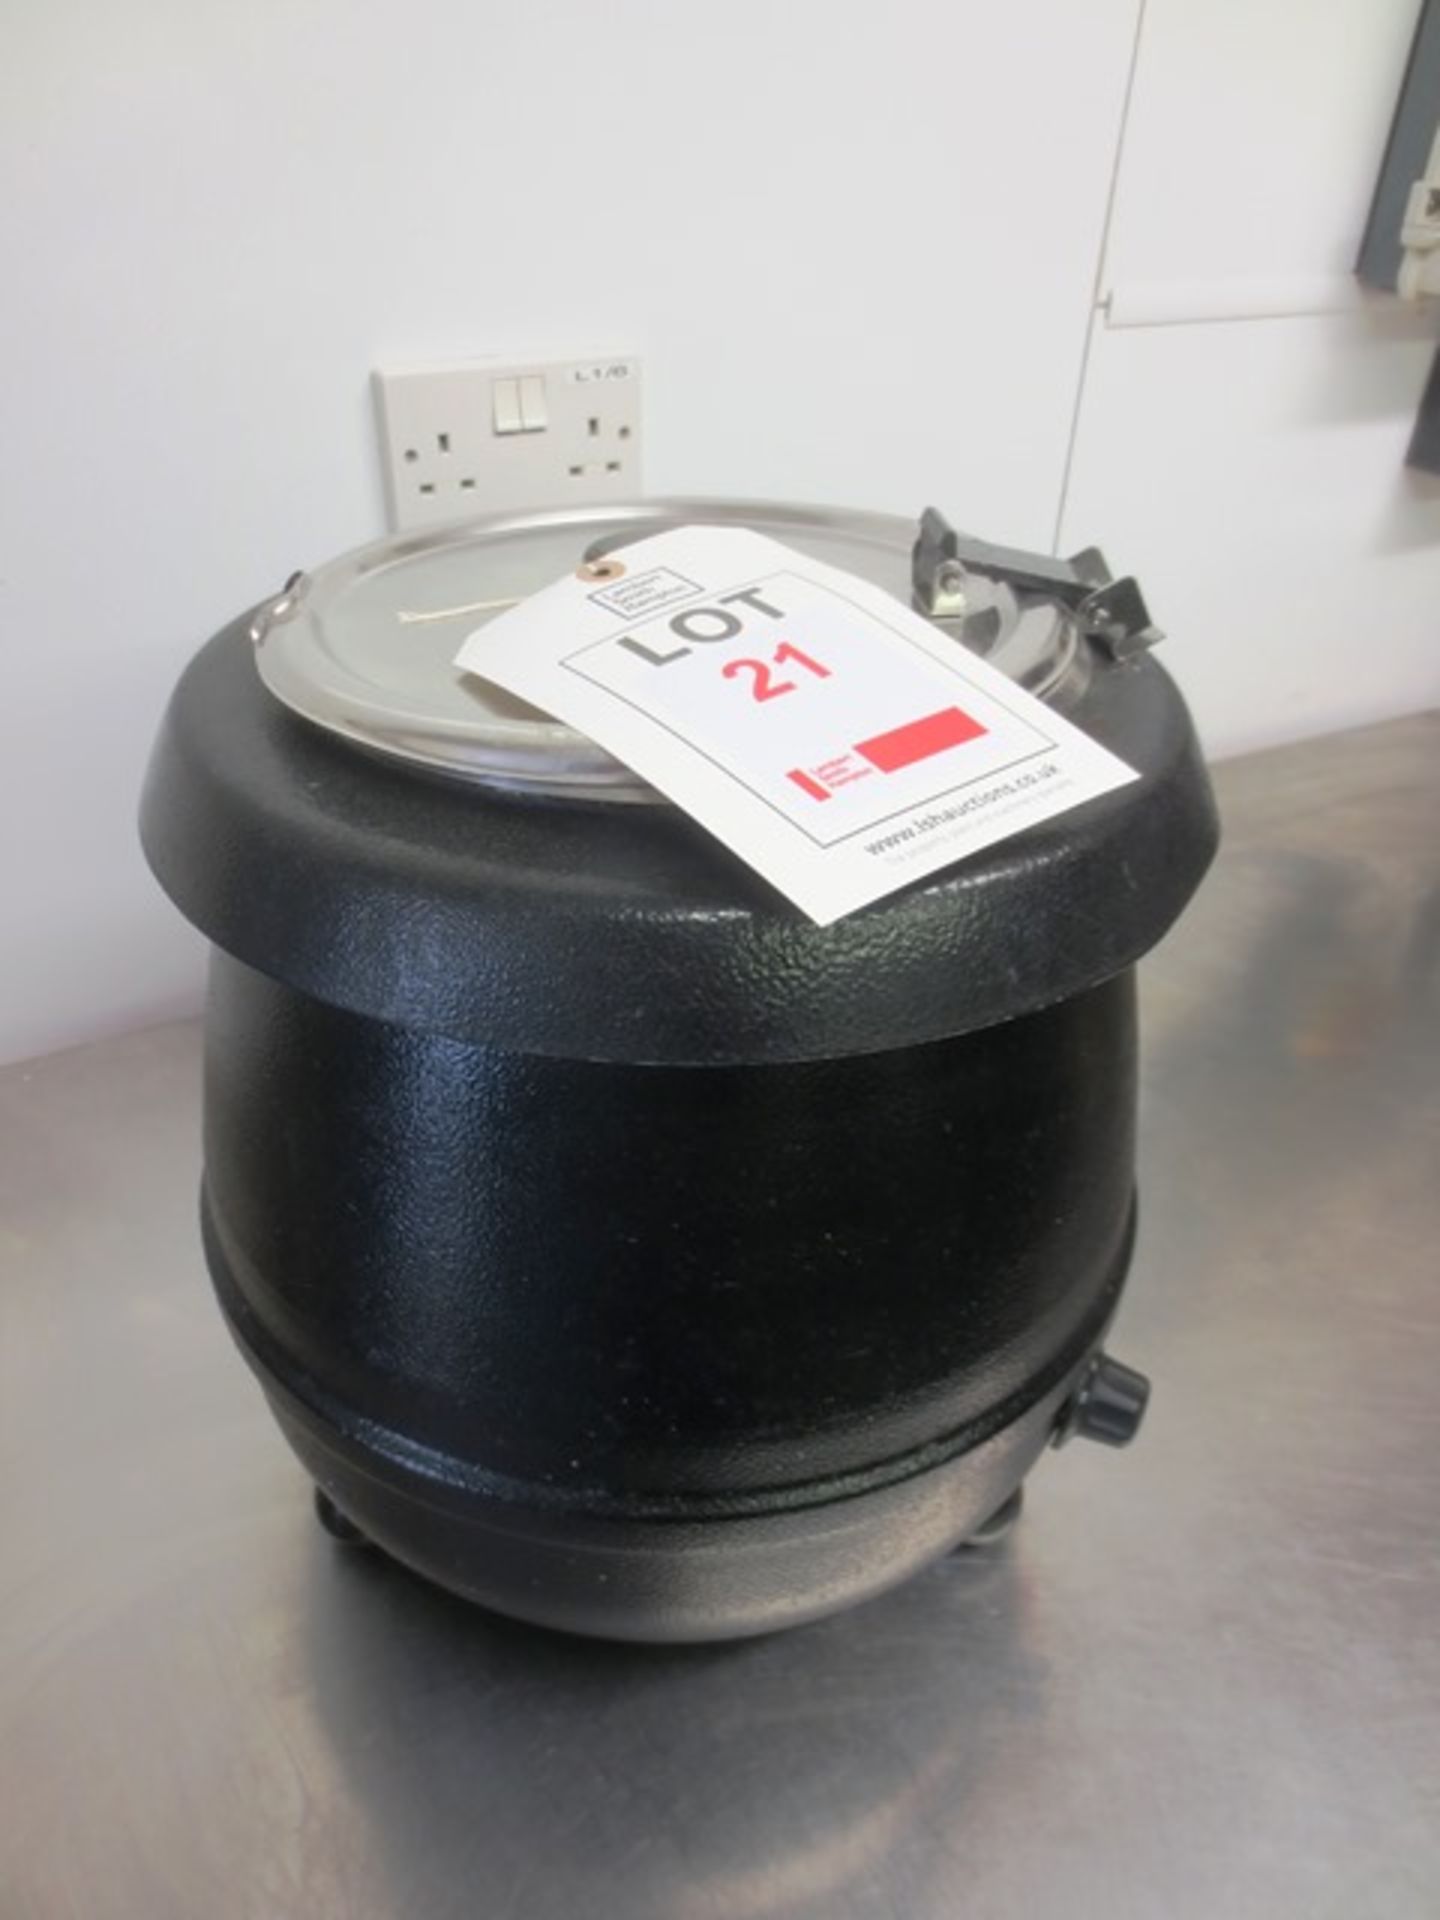 Soup warming urn, model: TS-6000 (240v) - Image 2 of 2